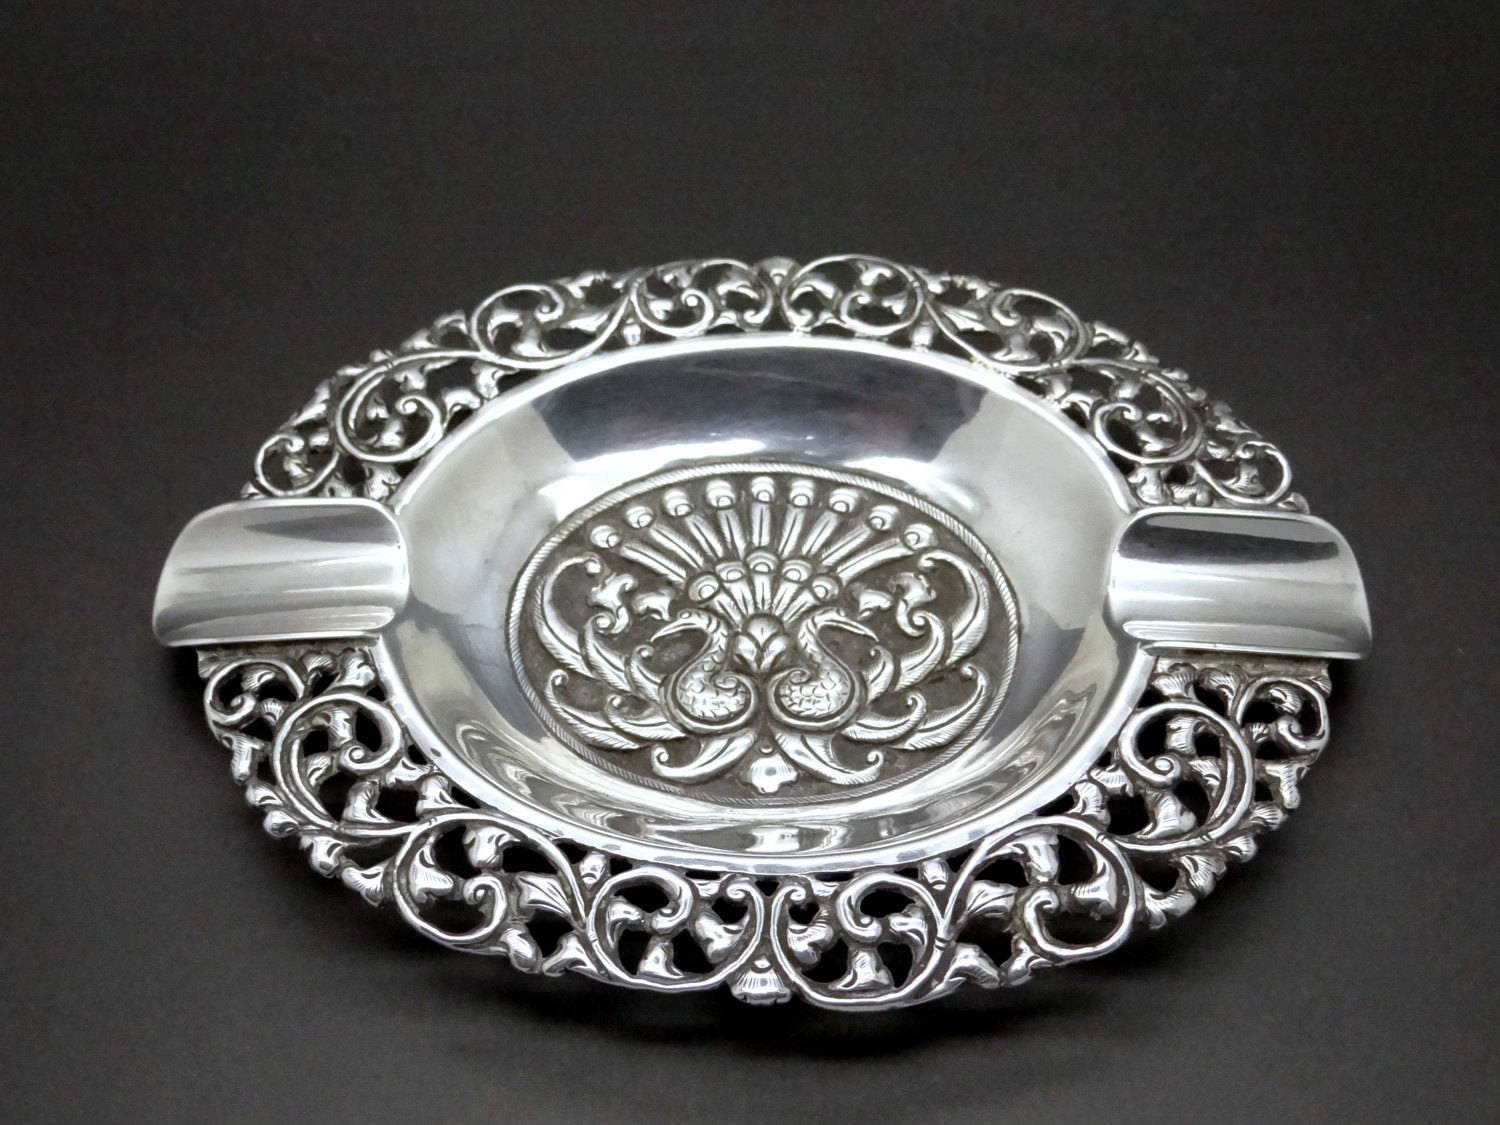 Antike 800 Silber Aschenbecher 53 Gramm Pfau Ornament 1930er Jahre  asiatische Art Deco Yogya handgefertigte Silberarbeit massive Silber Djokja  惹 - .de